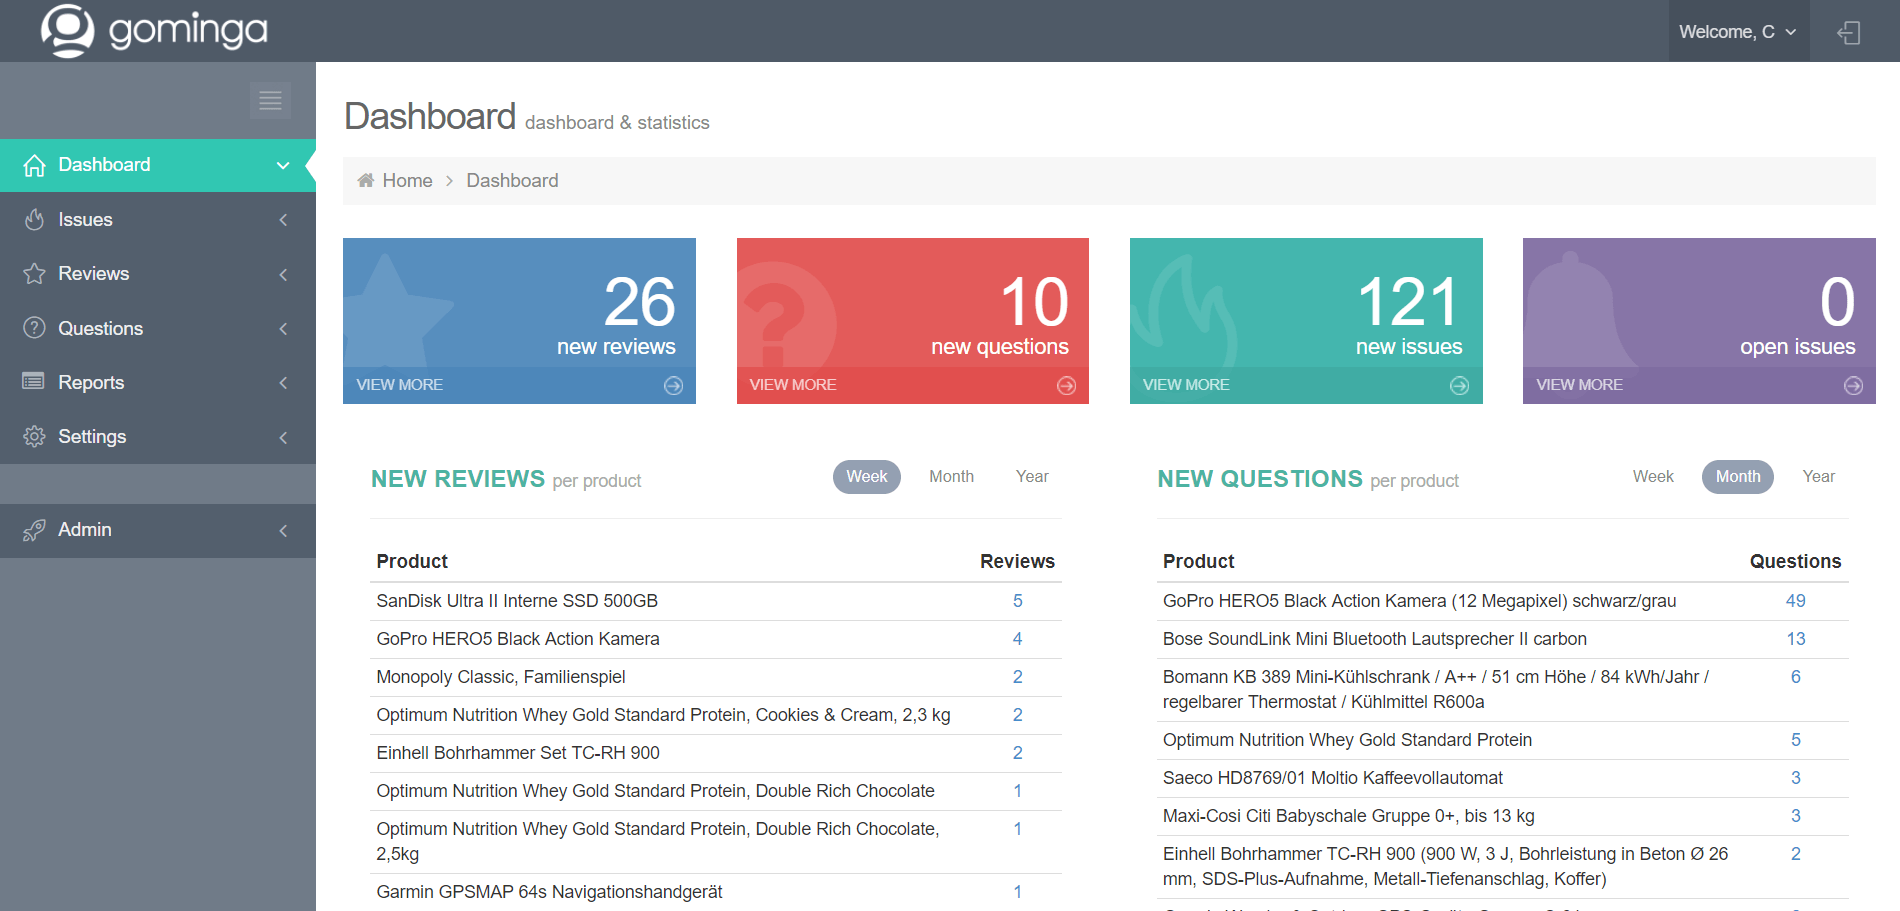 gominga-review-tool-screenshot